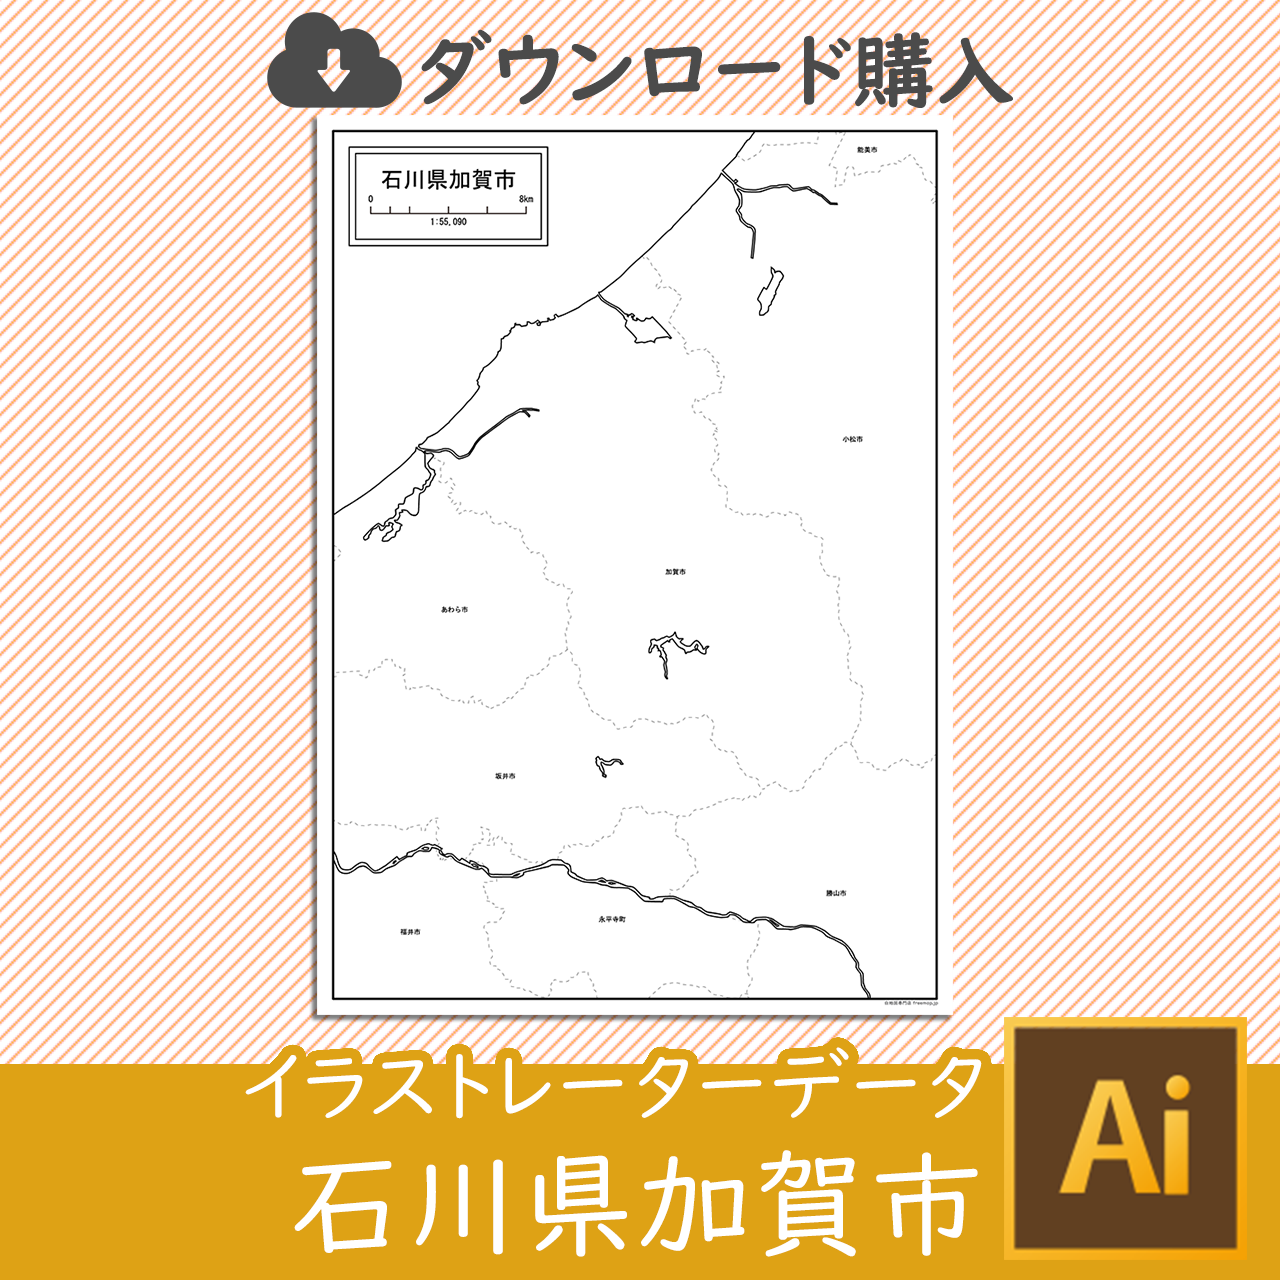 加賀市のaiデータのサムネイル画像